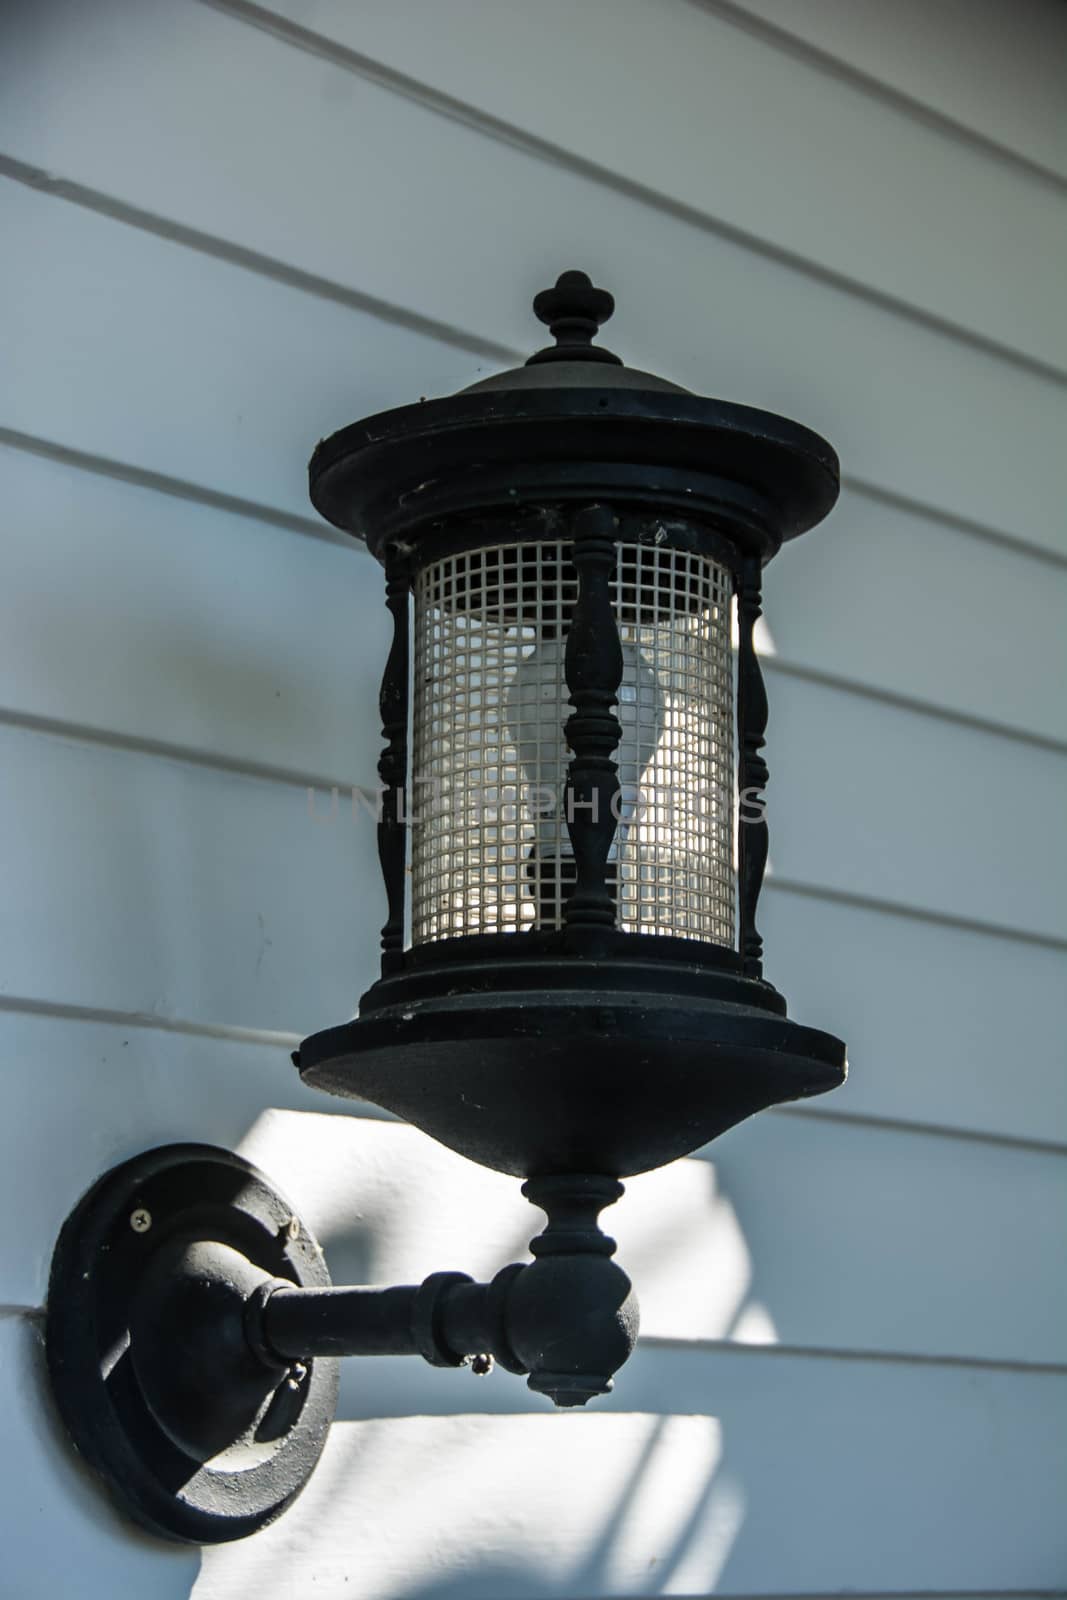 Porch Lantern Light Fixture. by cestes001